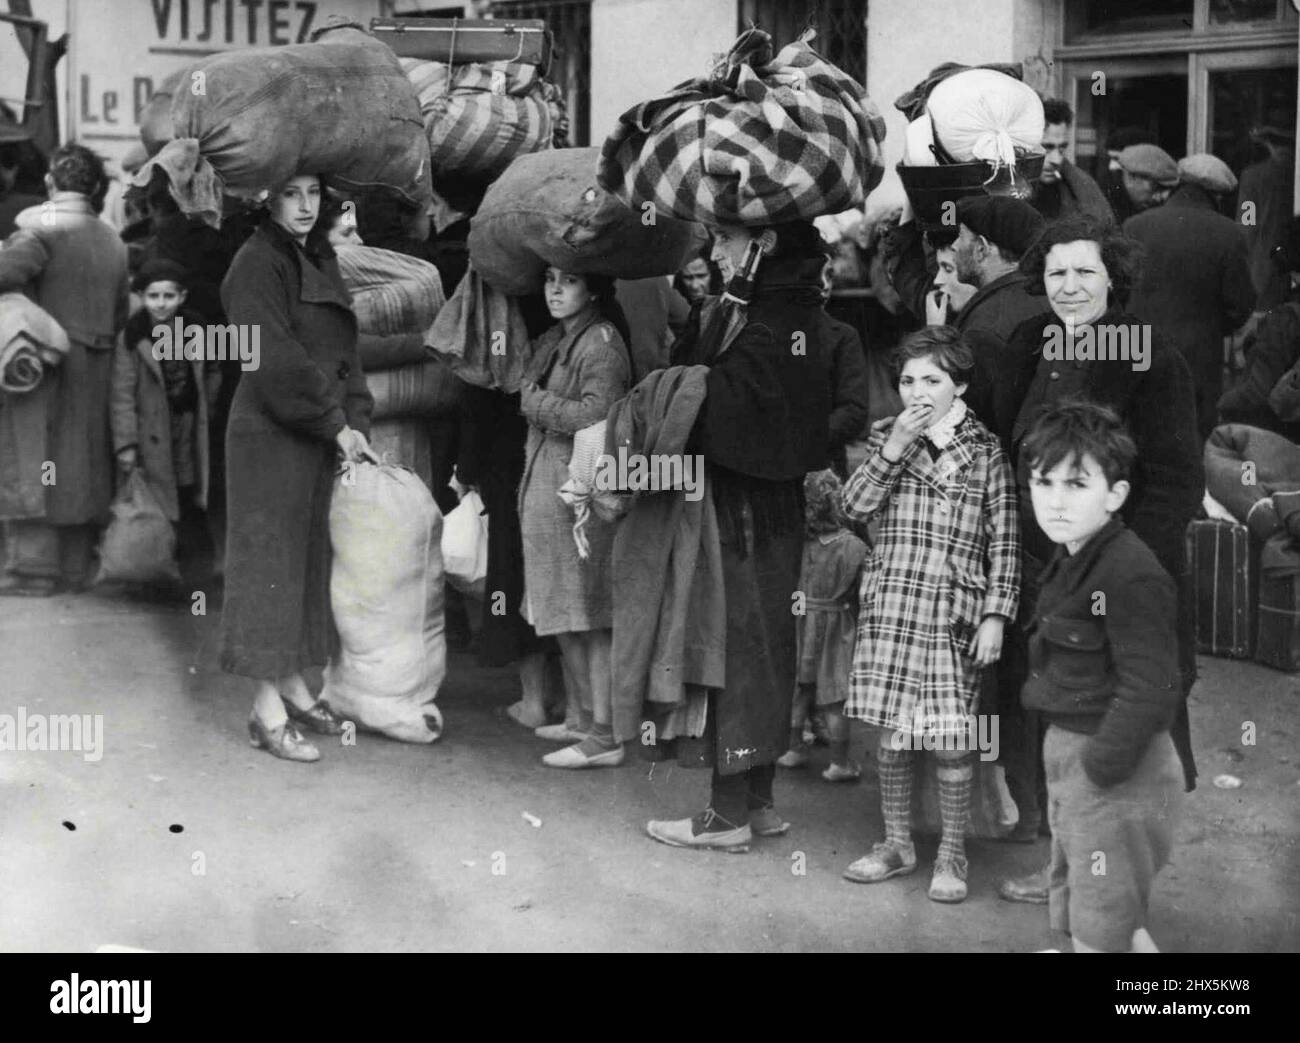 Spanische Flüchtlinge an der französischen Grenze -- Flüchtlinge mit ihren weltlichen Habseligkeiten im Le Perthos. Tausende spanischer Flüchtlinge sind vor den französischen Truppen geflohen und an der französischen Grenze angekommen. 20. Februar 1939. (Foto von Central Press Photos Ltd.). Stockfoto